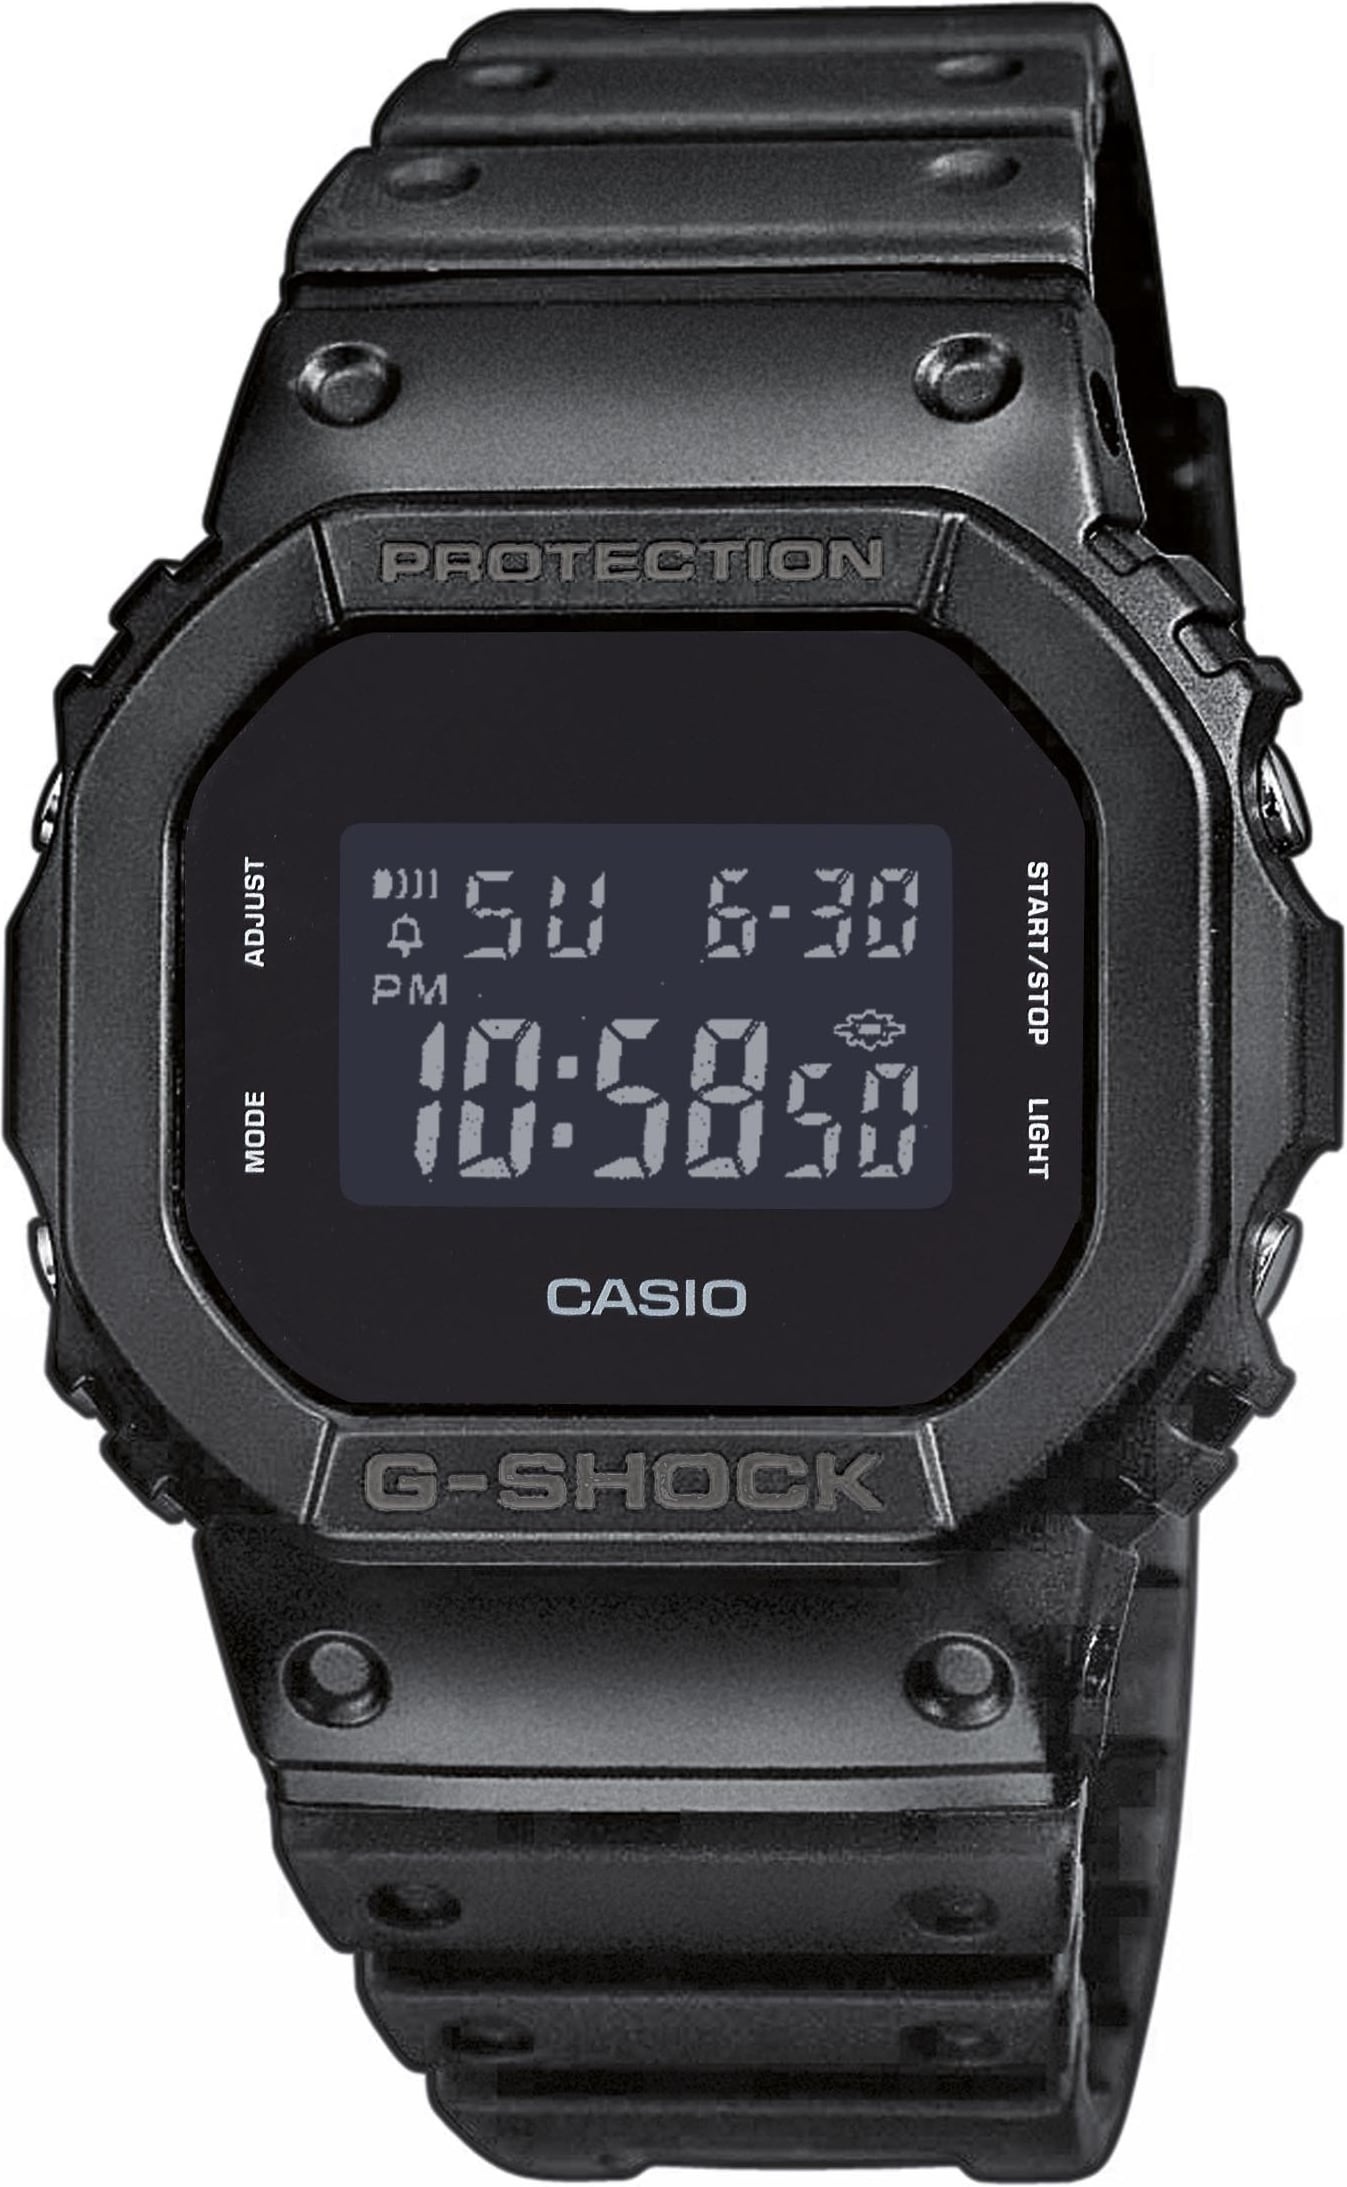 Bild G-Shock DW-5600BB-1ER